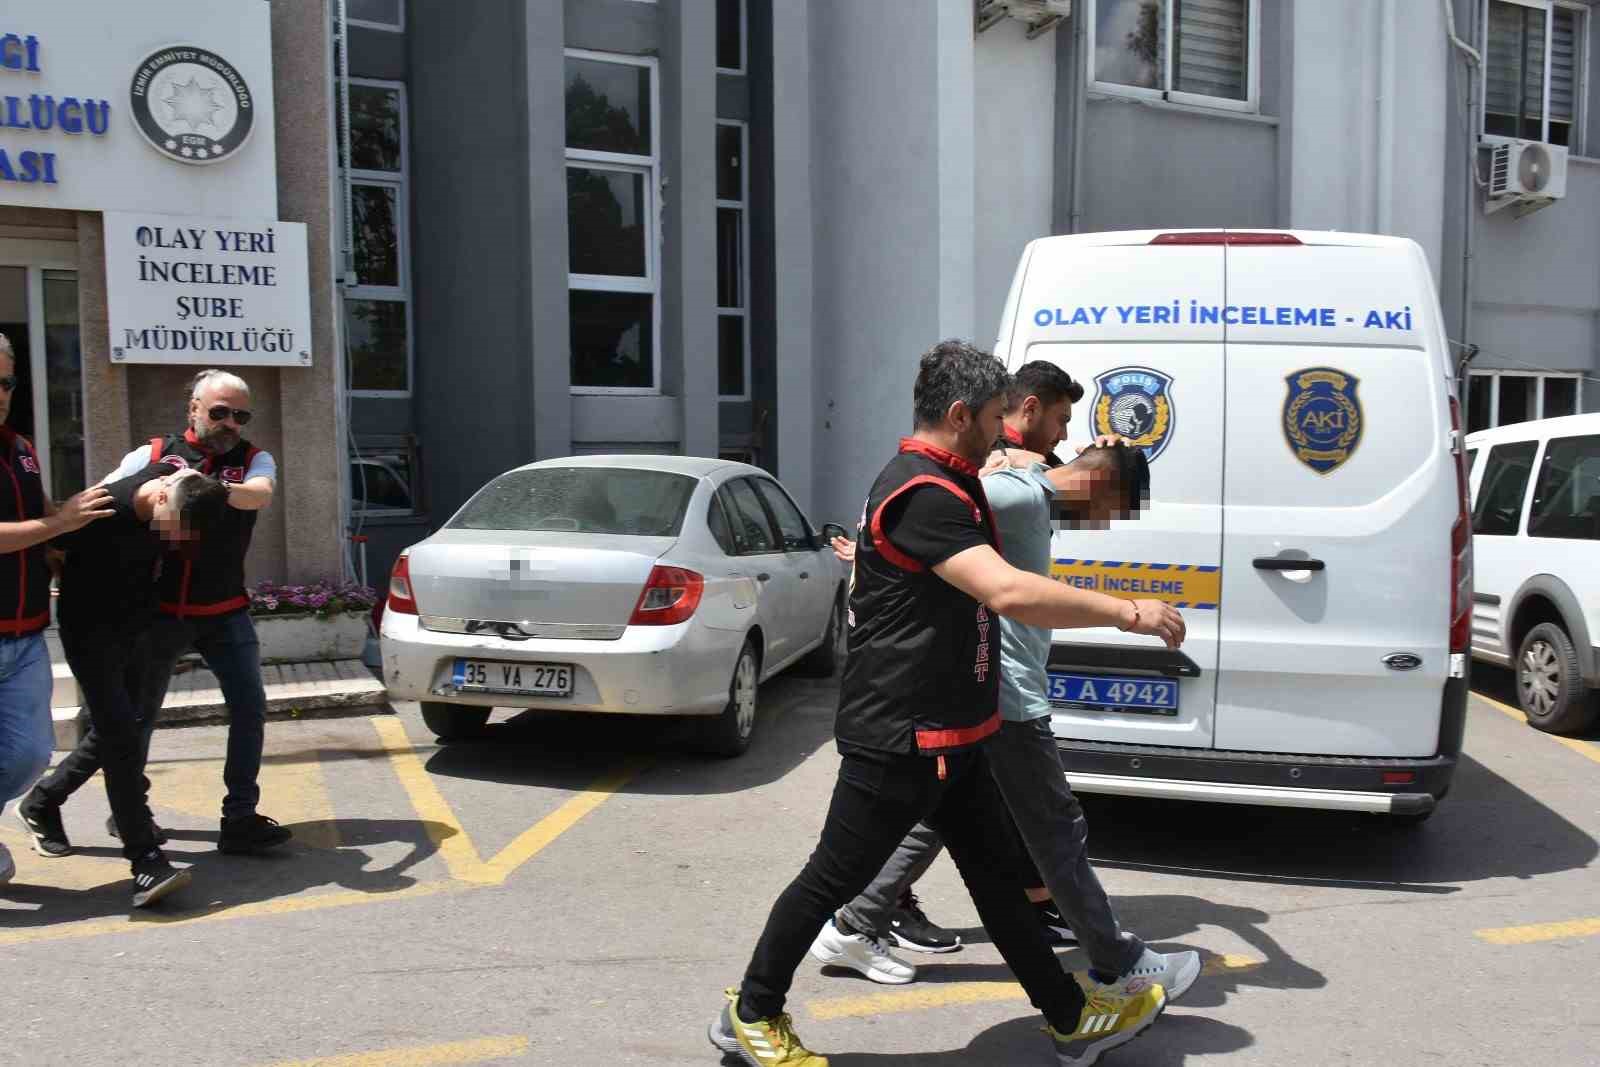 Ölen 17, öldürenler 18 yaşında: İzmir’deki cinayette intikam detayı